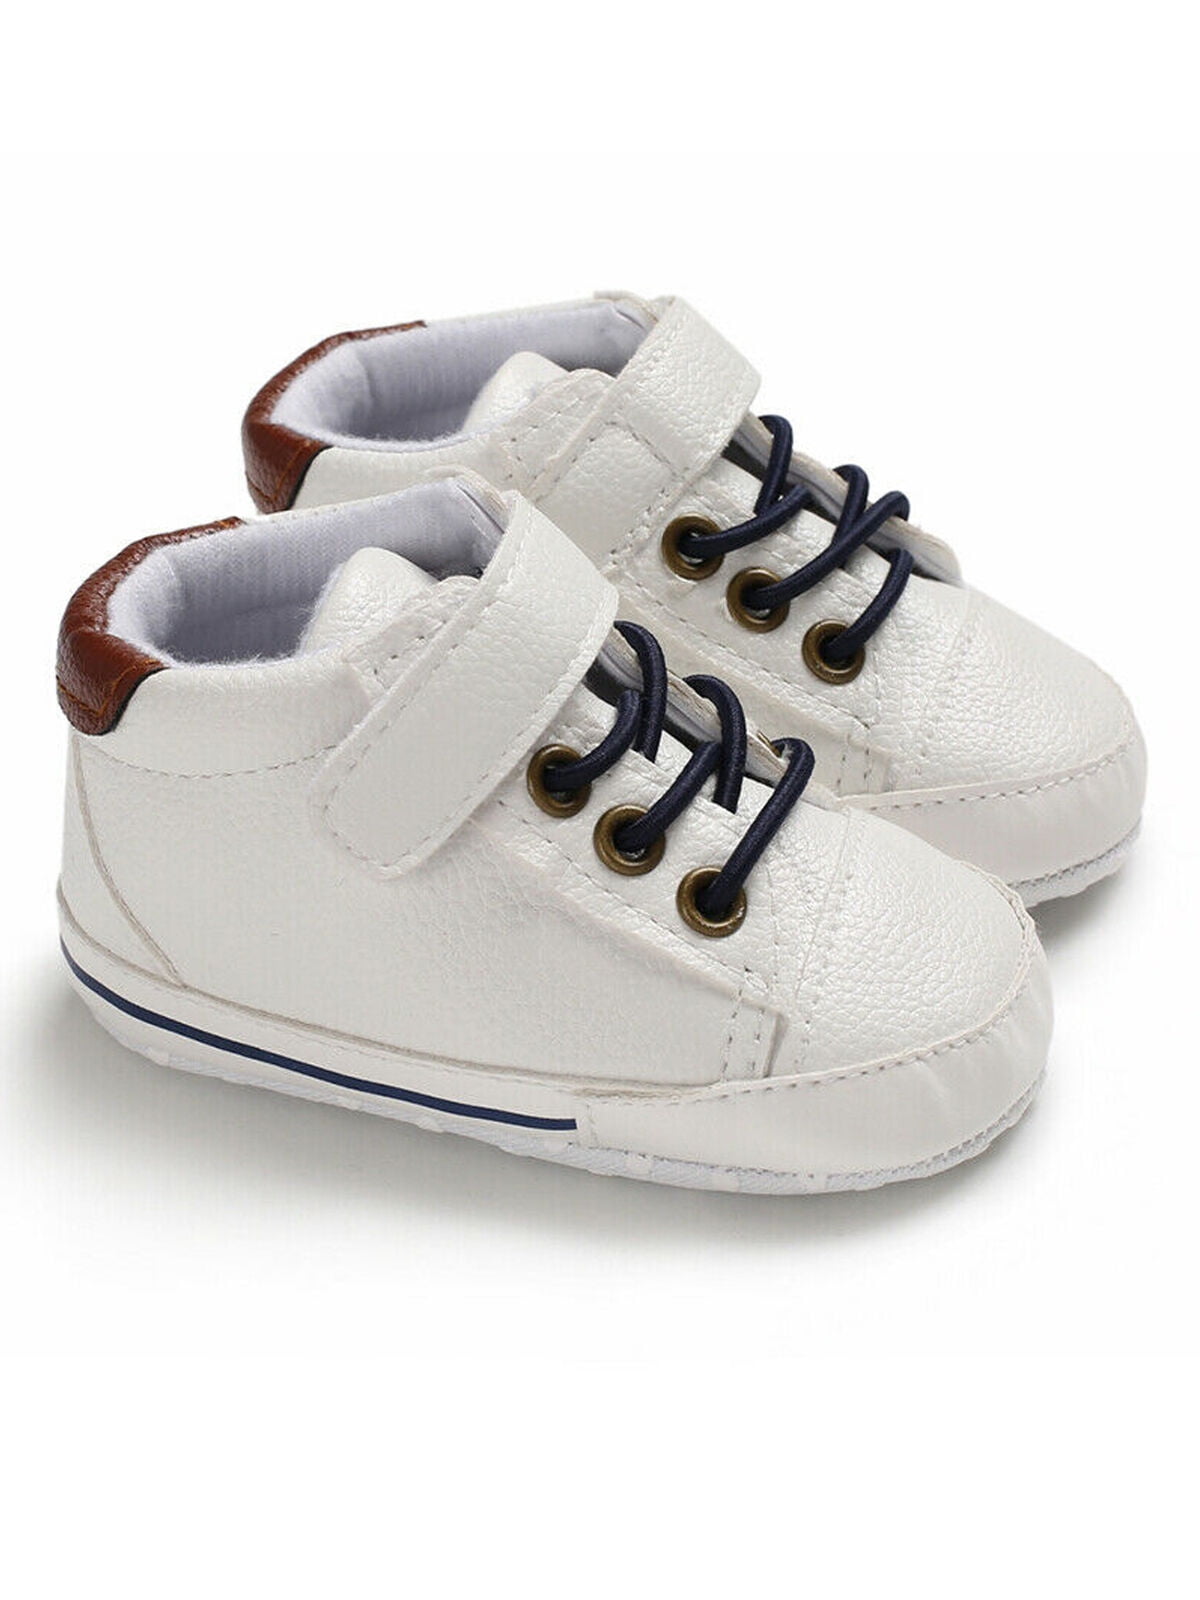 baby boy pre walker shoes